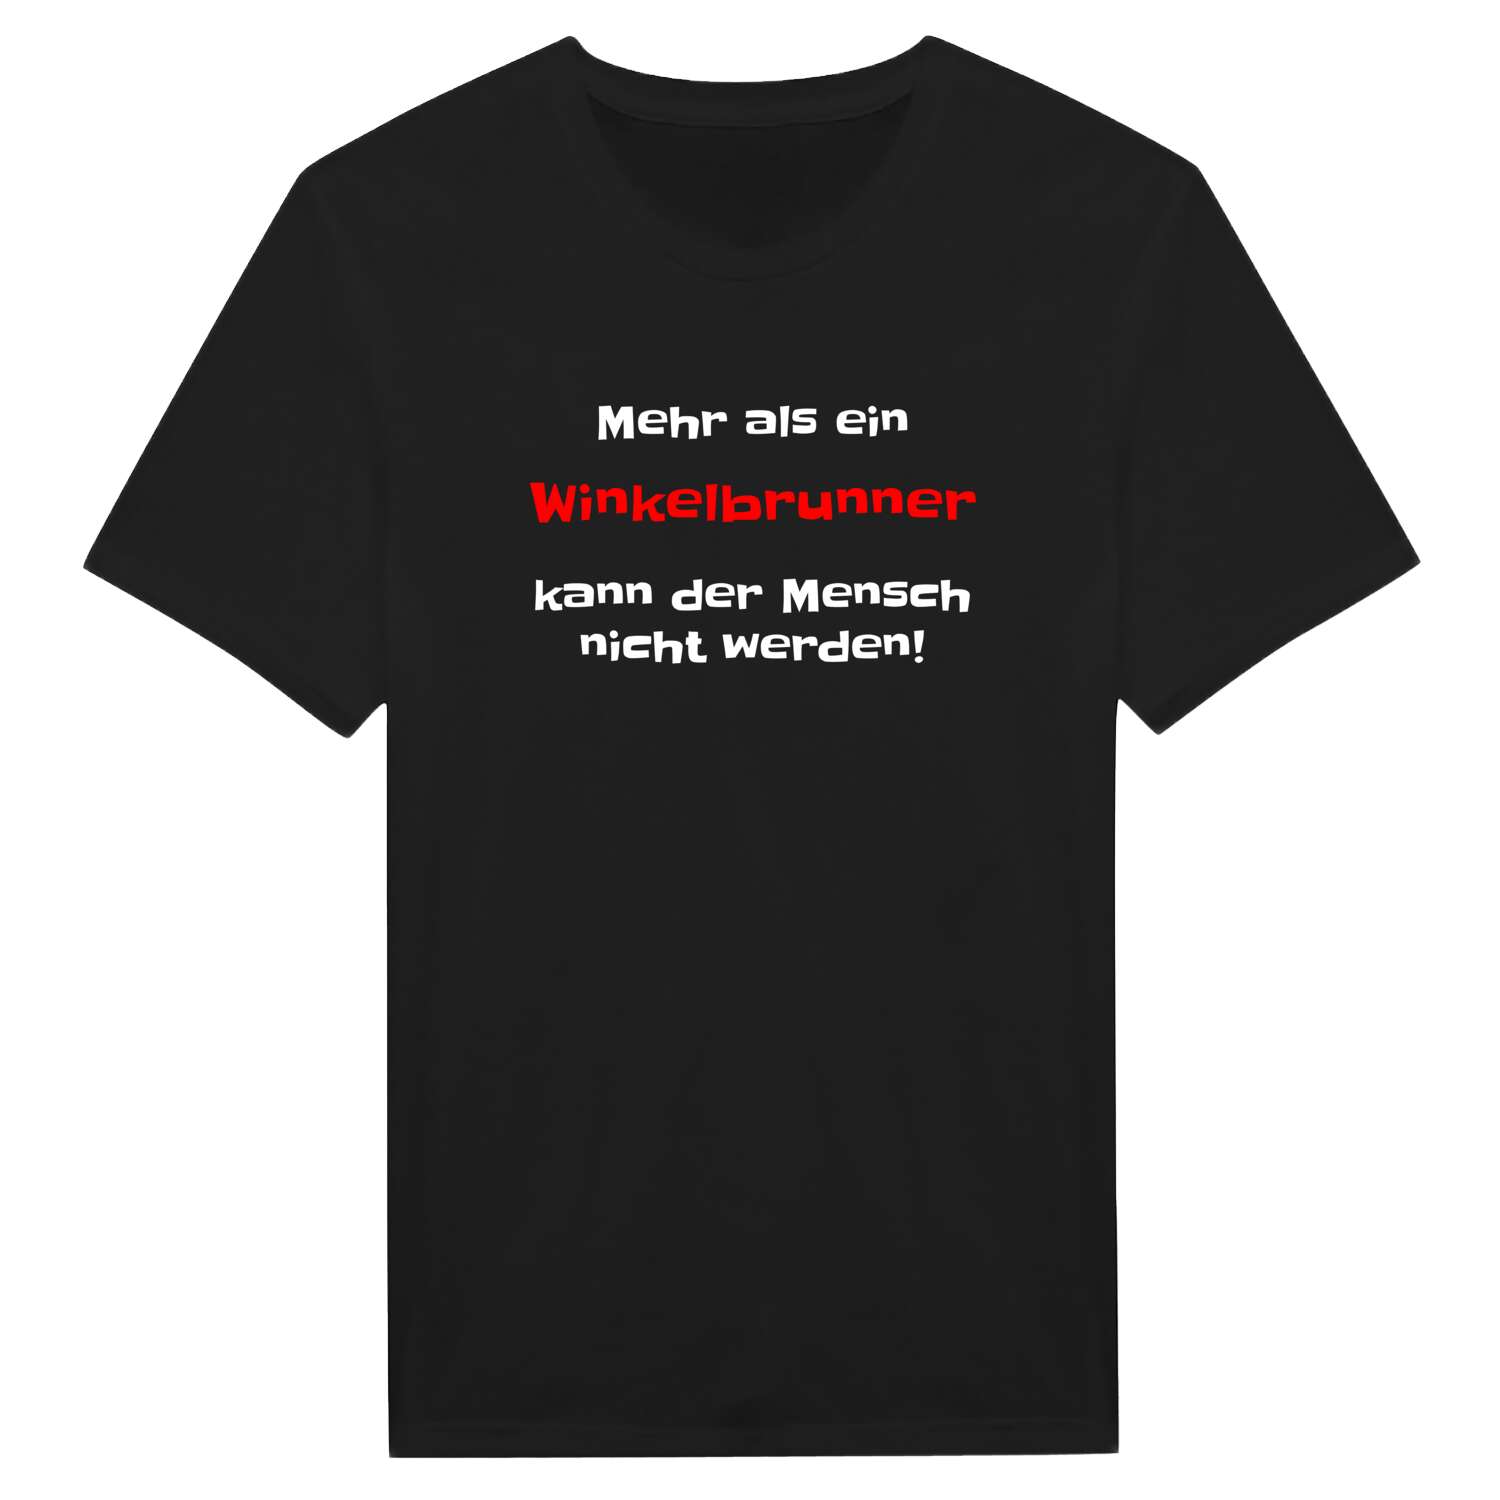 Winkelbrunn T-Shirt »Mehr als ein«